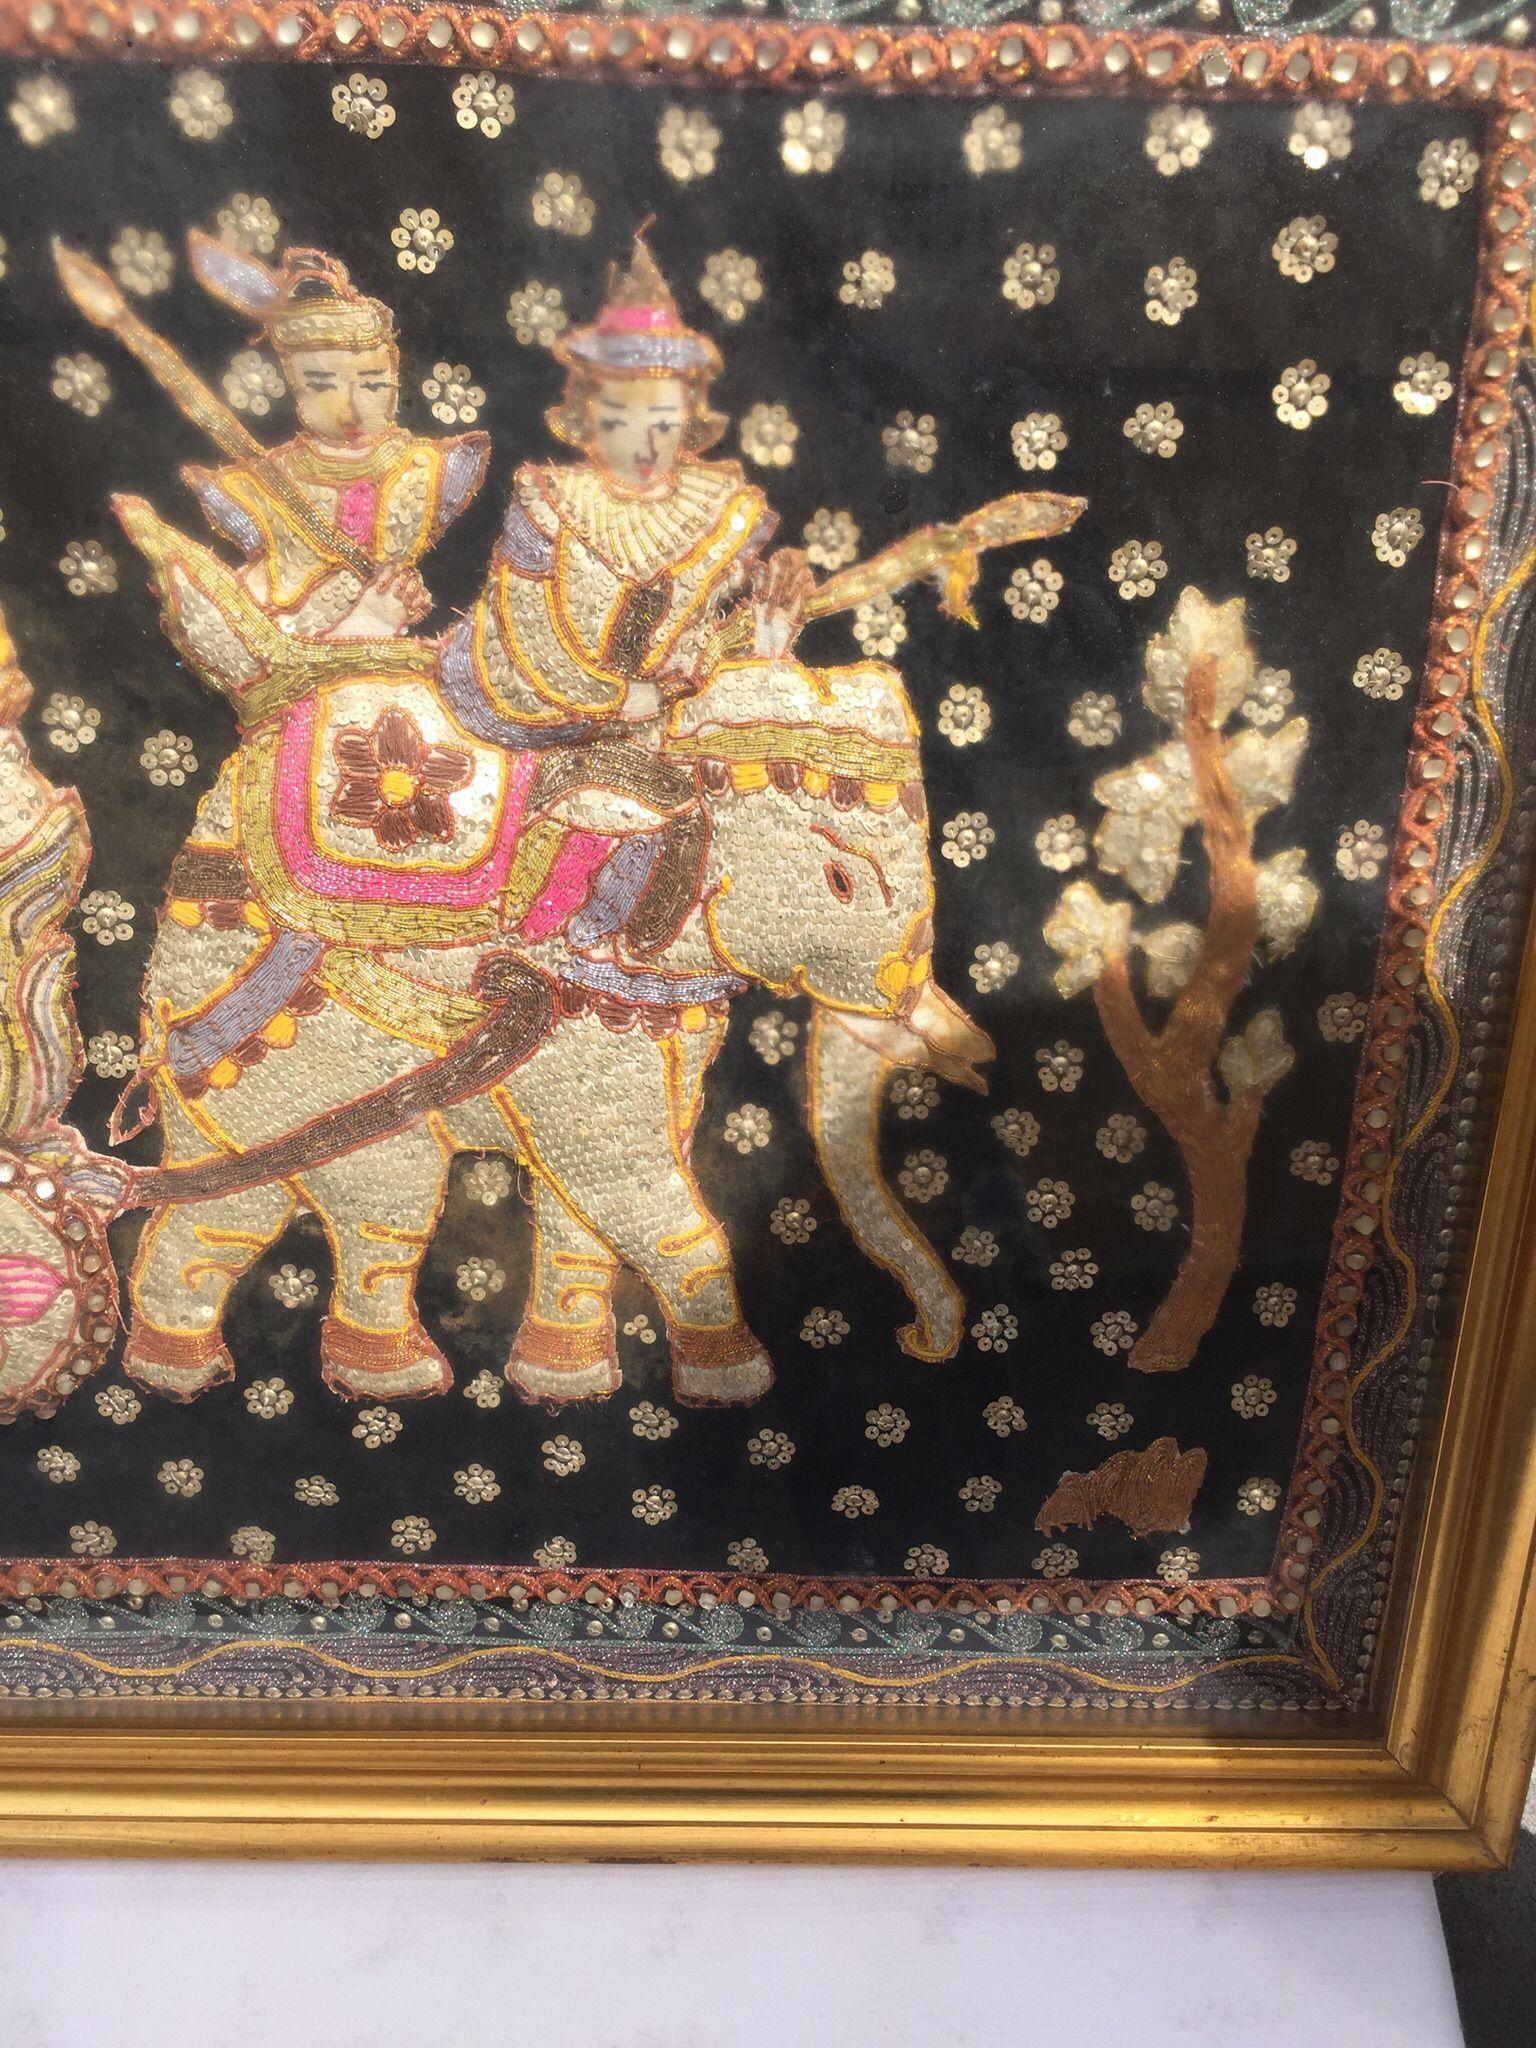 Erstaunlich, indische dekorative Kunst Seide Wandteppich Königliche Familie Release.
Hervorragende Zusammensetzung, ist diese fantastische Seide Wandteppich in einem vergoldeten Holzrahmen gerahmt, siehe Foto auf der Rückseite. Die Maße beziehen